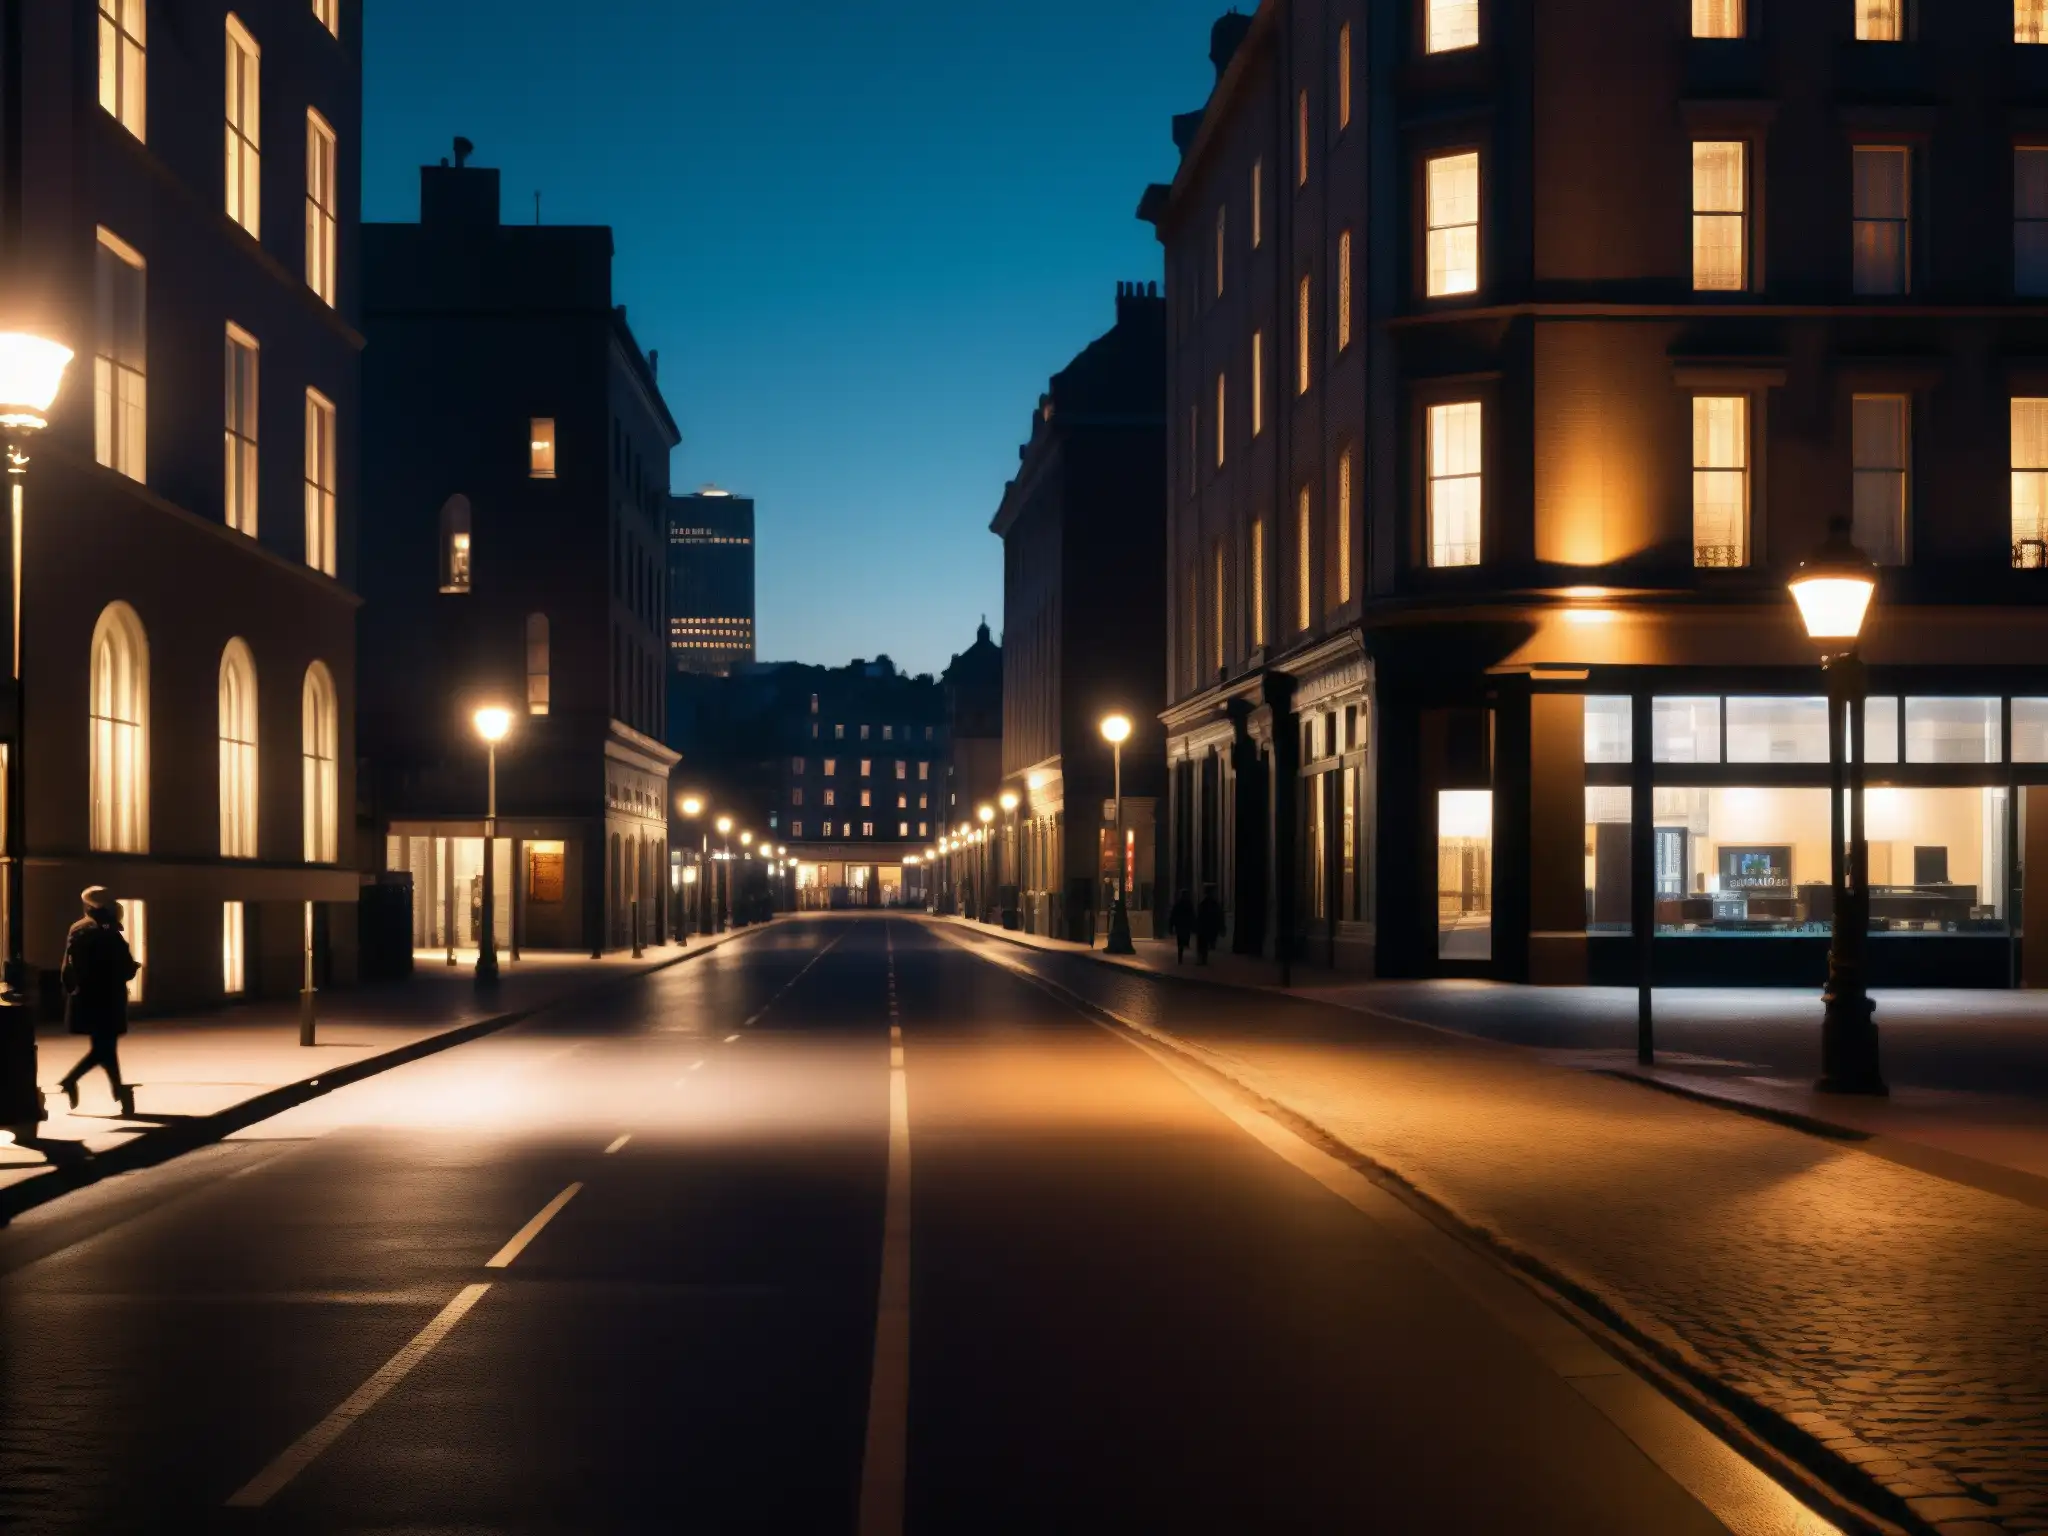 Una calle de la ciudad de noche con edificios iluminados y sombras largas en el pavimento, evocando implicaciones de leyendas urbanas en salud mental